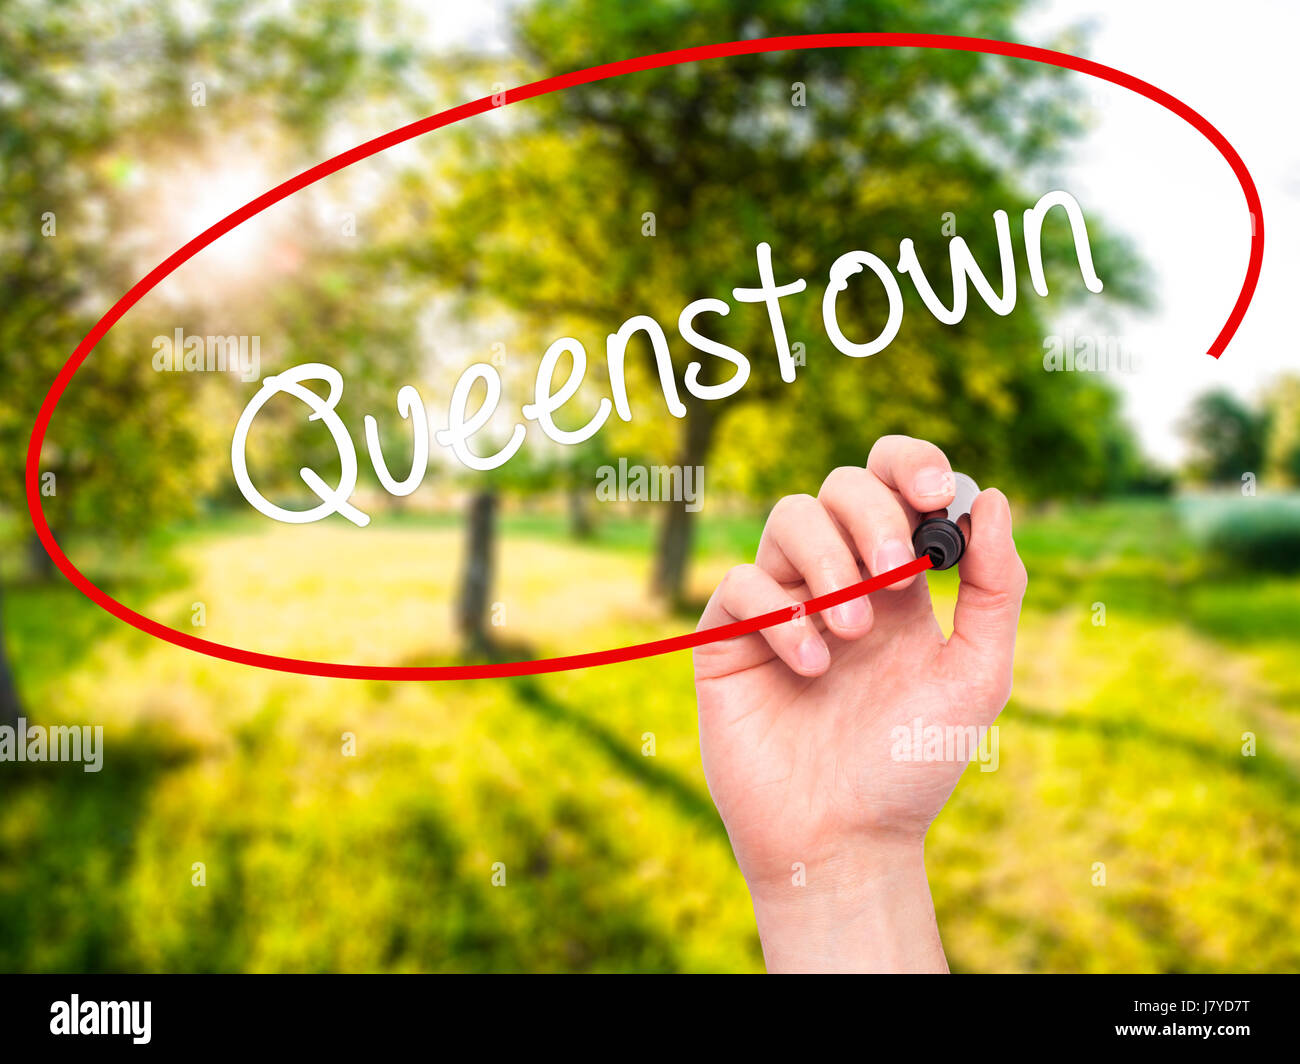 Hand des Mannes Queenstown mit schwarzem Filzstift auf Bildschirm zu schreiben. Isoliert auf Natur. Wirtschaft, Technologie, Internet-Konzept. Stock Foto Stockfoto